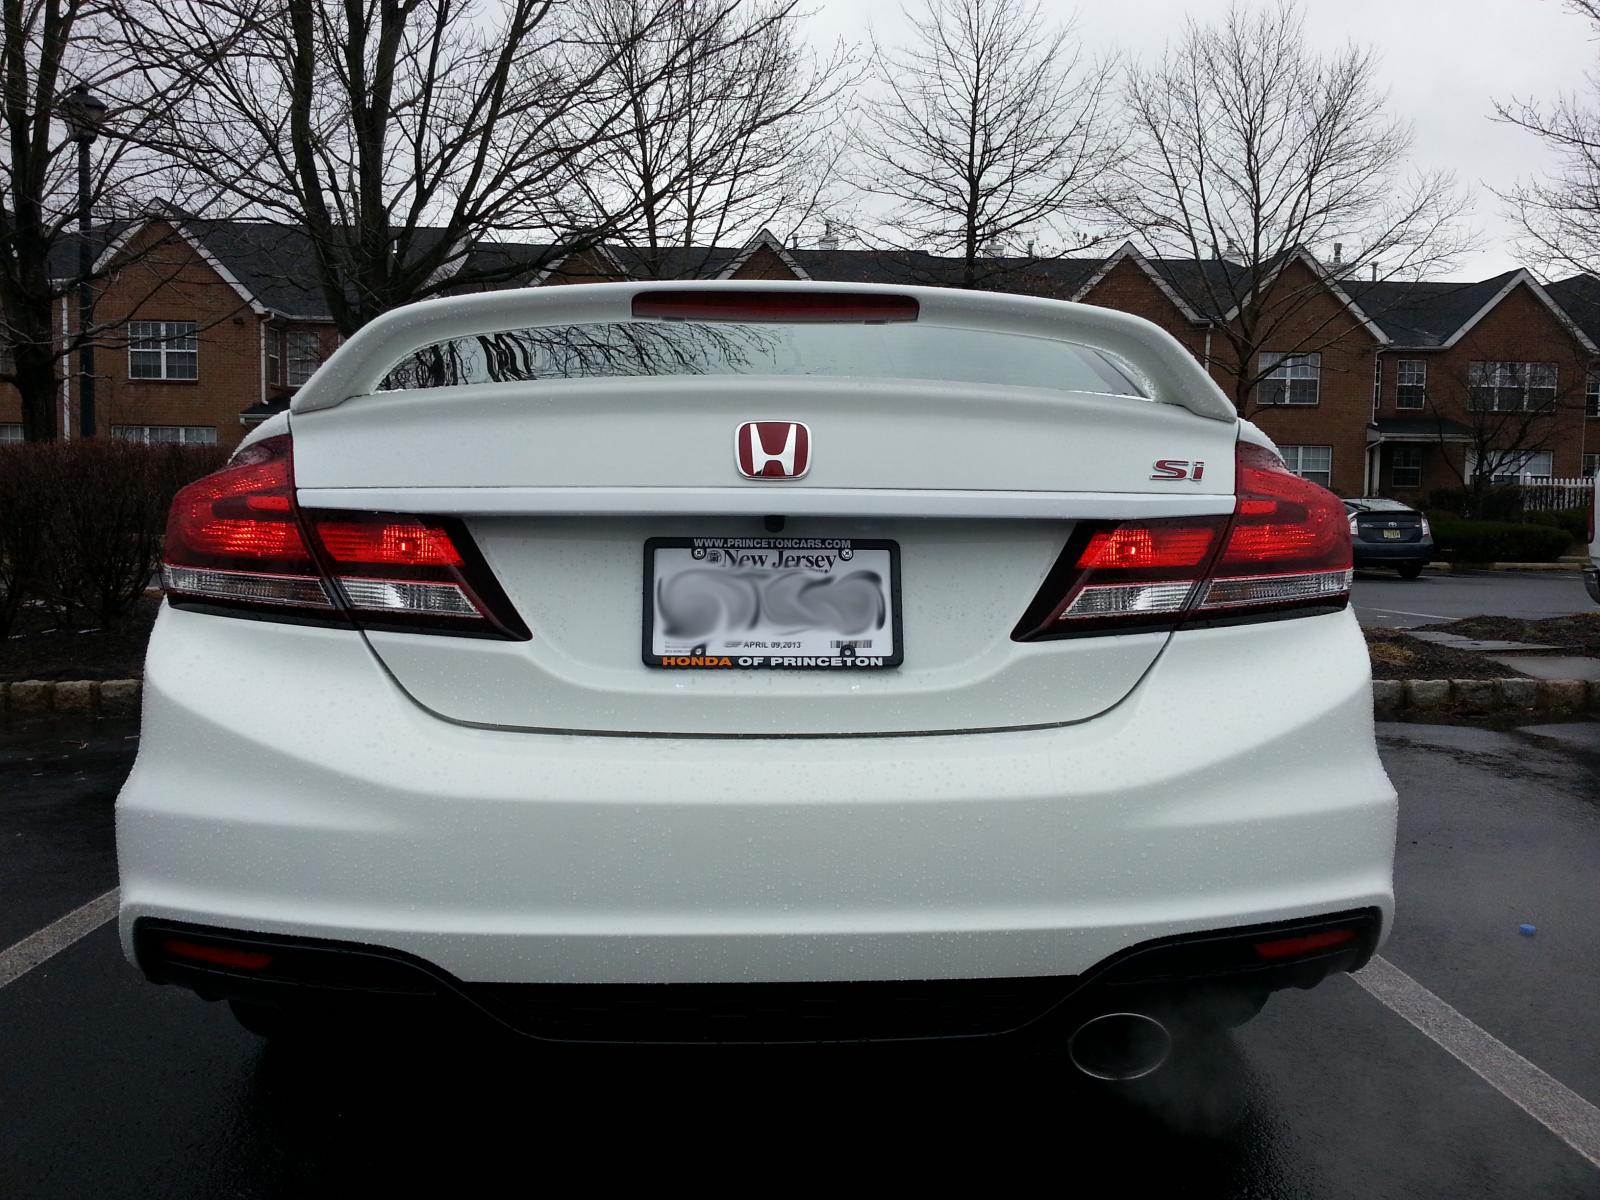 2013 Honda Civic Logo - Red Honda Emblems Installed! :D